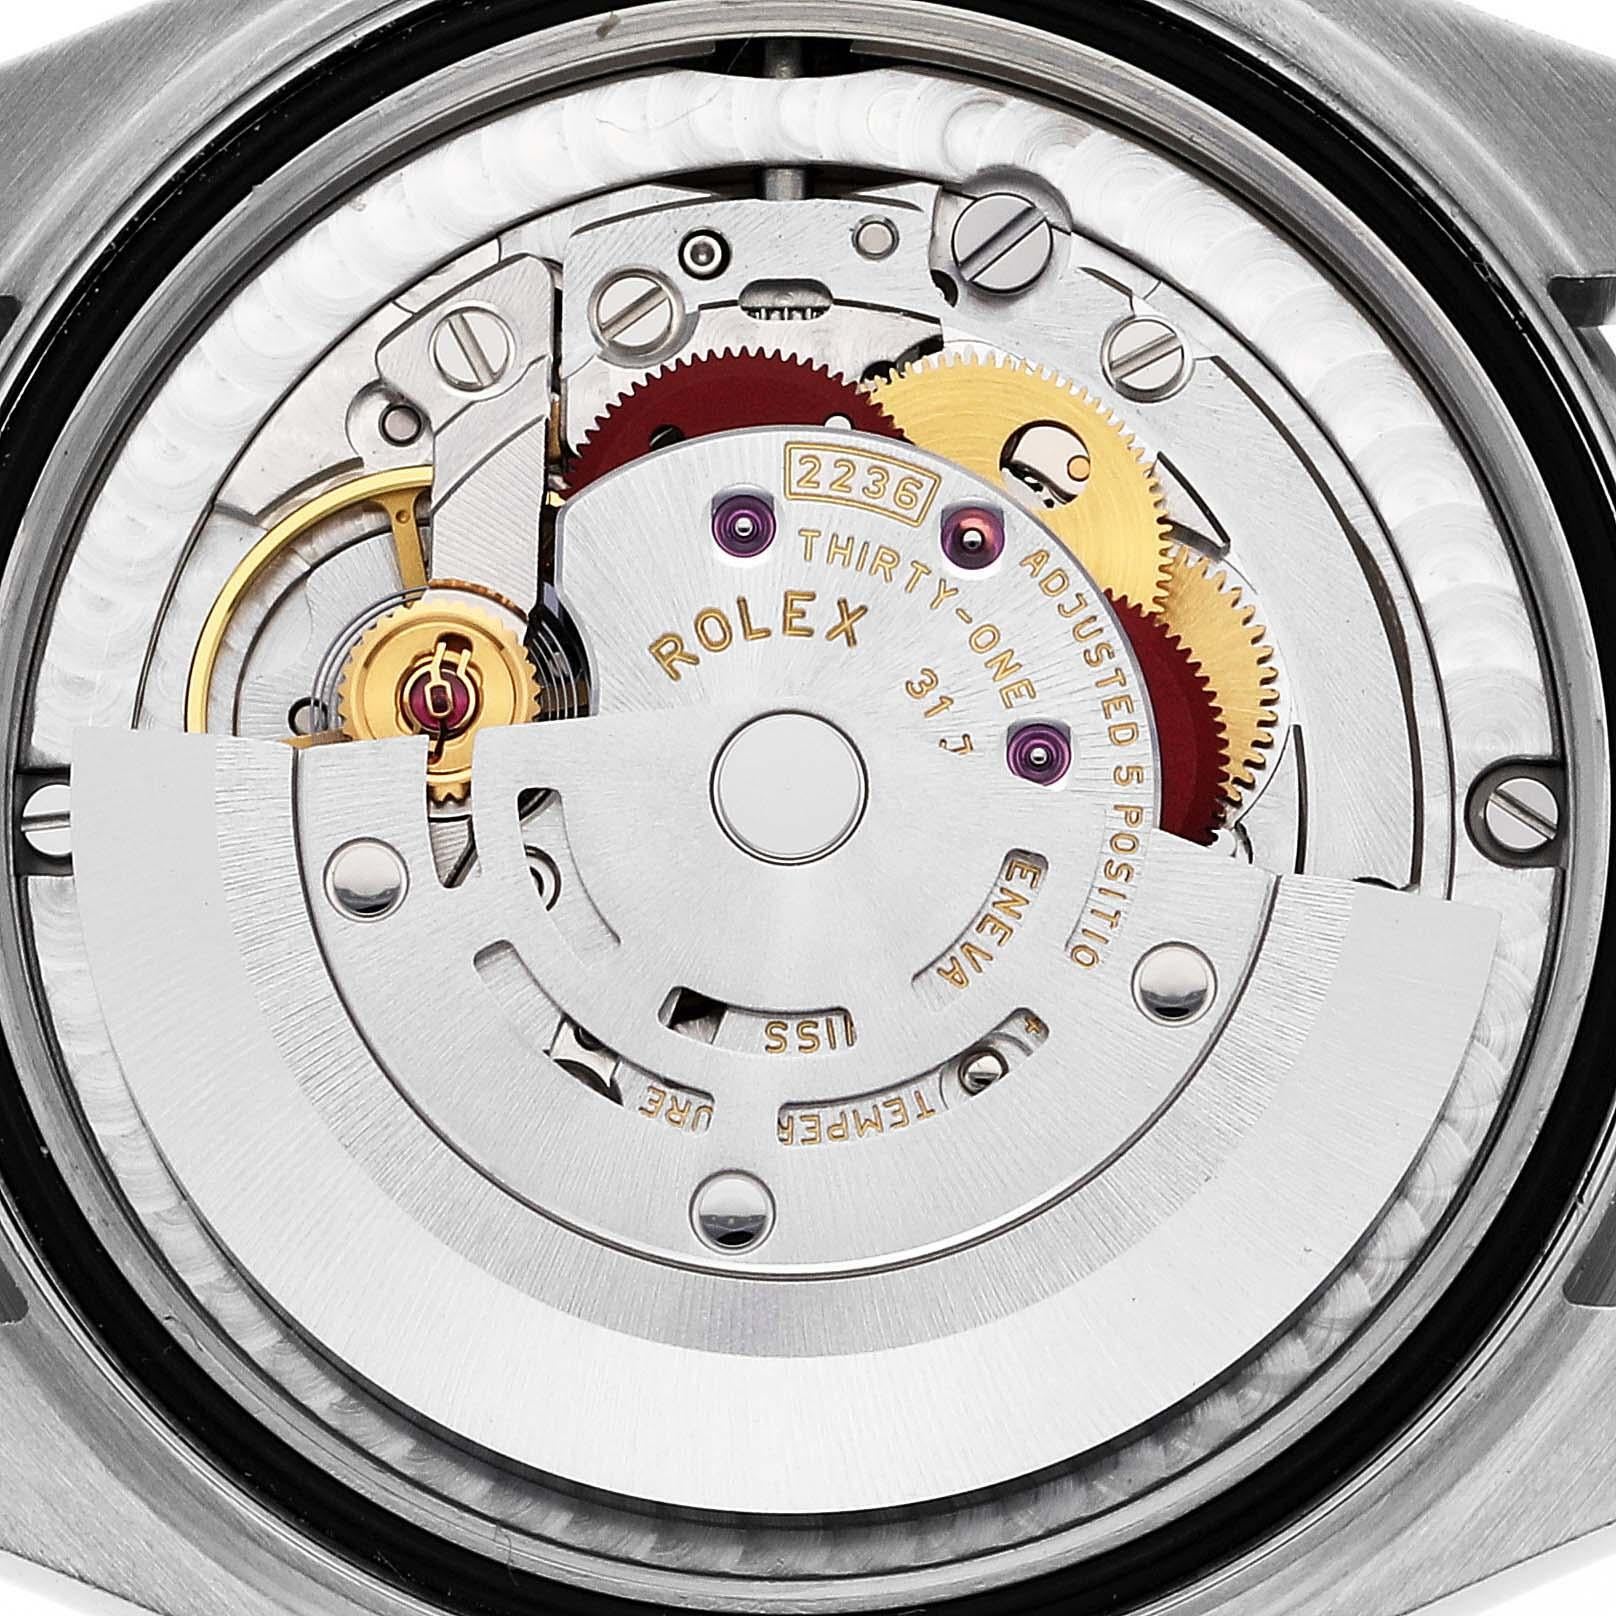 Rolex Datejust 31 Midsize Steel Rose Gold Roman Dial Ladies Watch 278271. Mouvement à remontage automatique certifié officiellement chronomètre. Boîtier oyster en acier inoxydable de 31 mm de diamètre. Logo Rolex sur la couronne en or rose 18